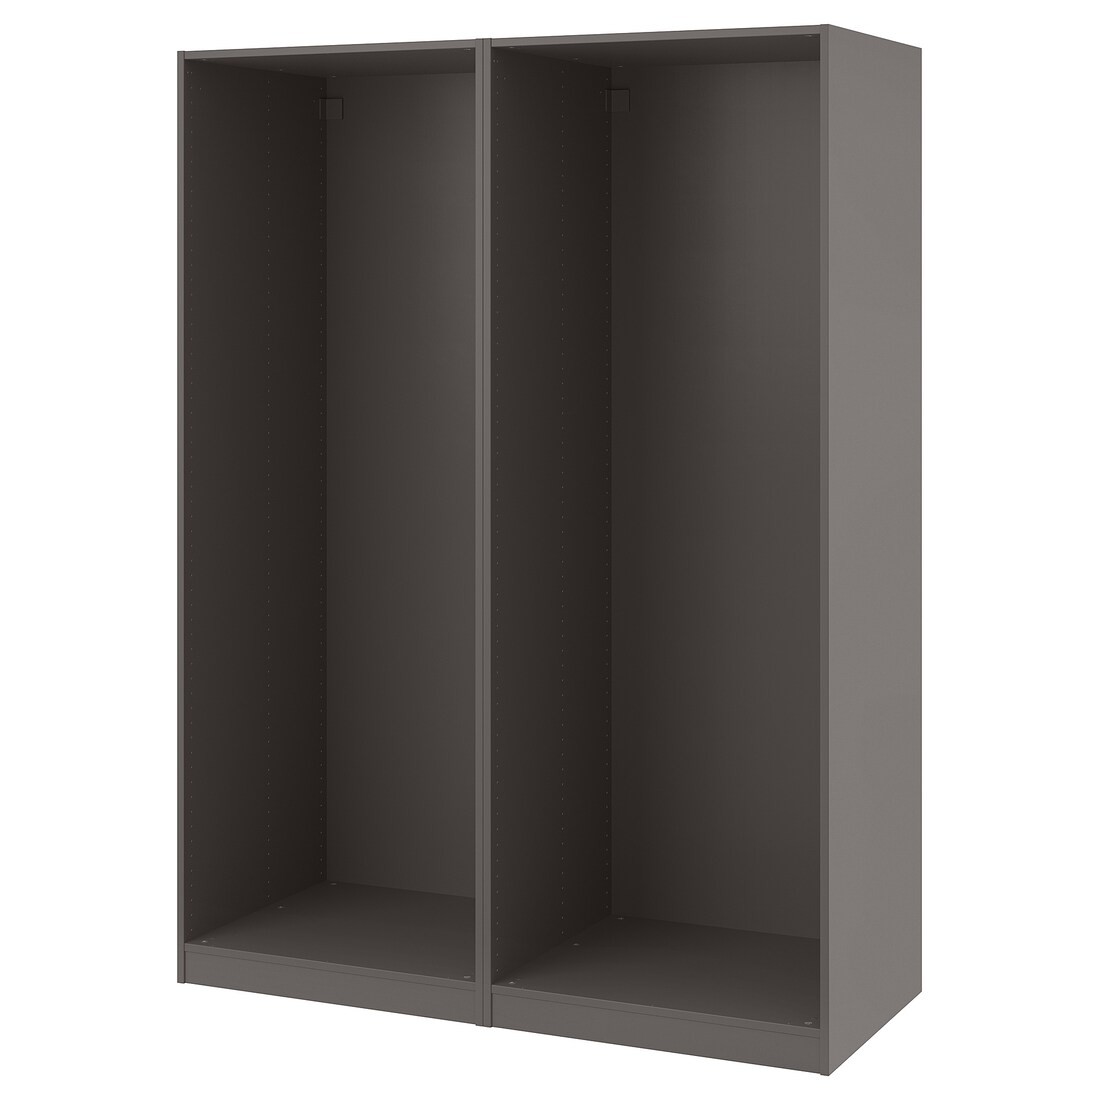 IKEA PAX ПАКС 2 каркаса гардероба, темно-серый, 150x58x201 см 79432176 794.321.76